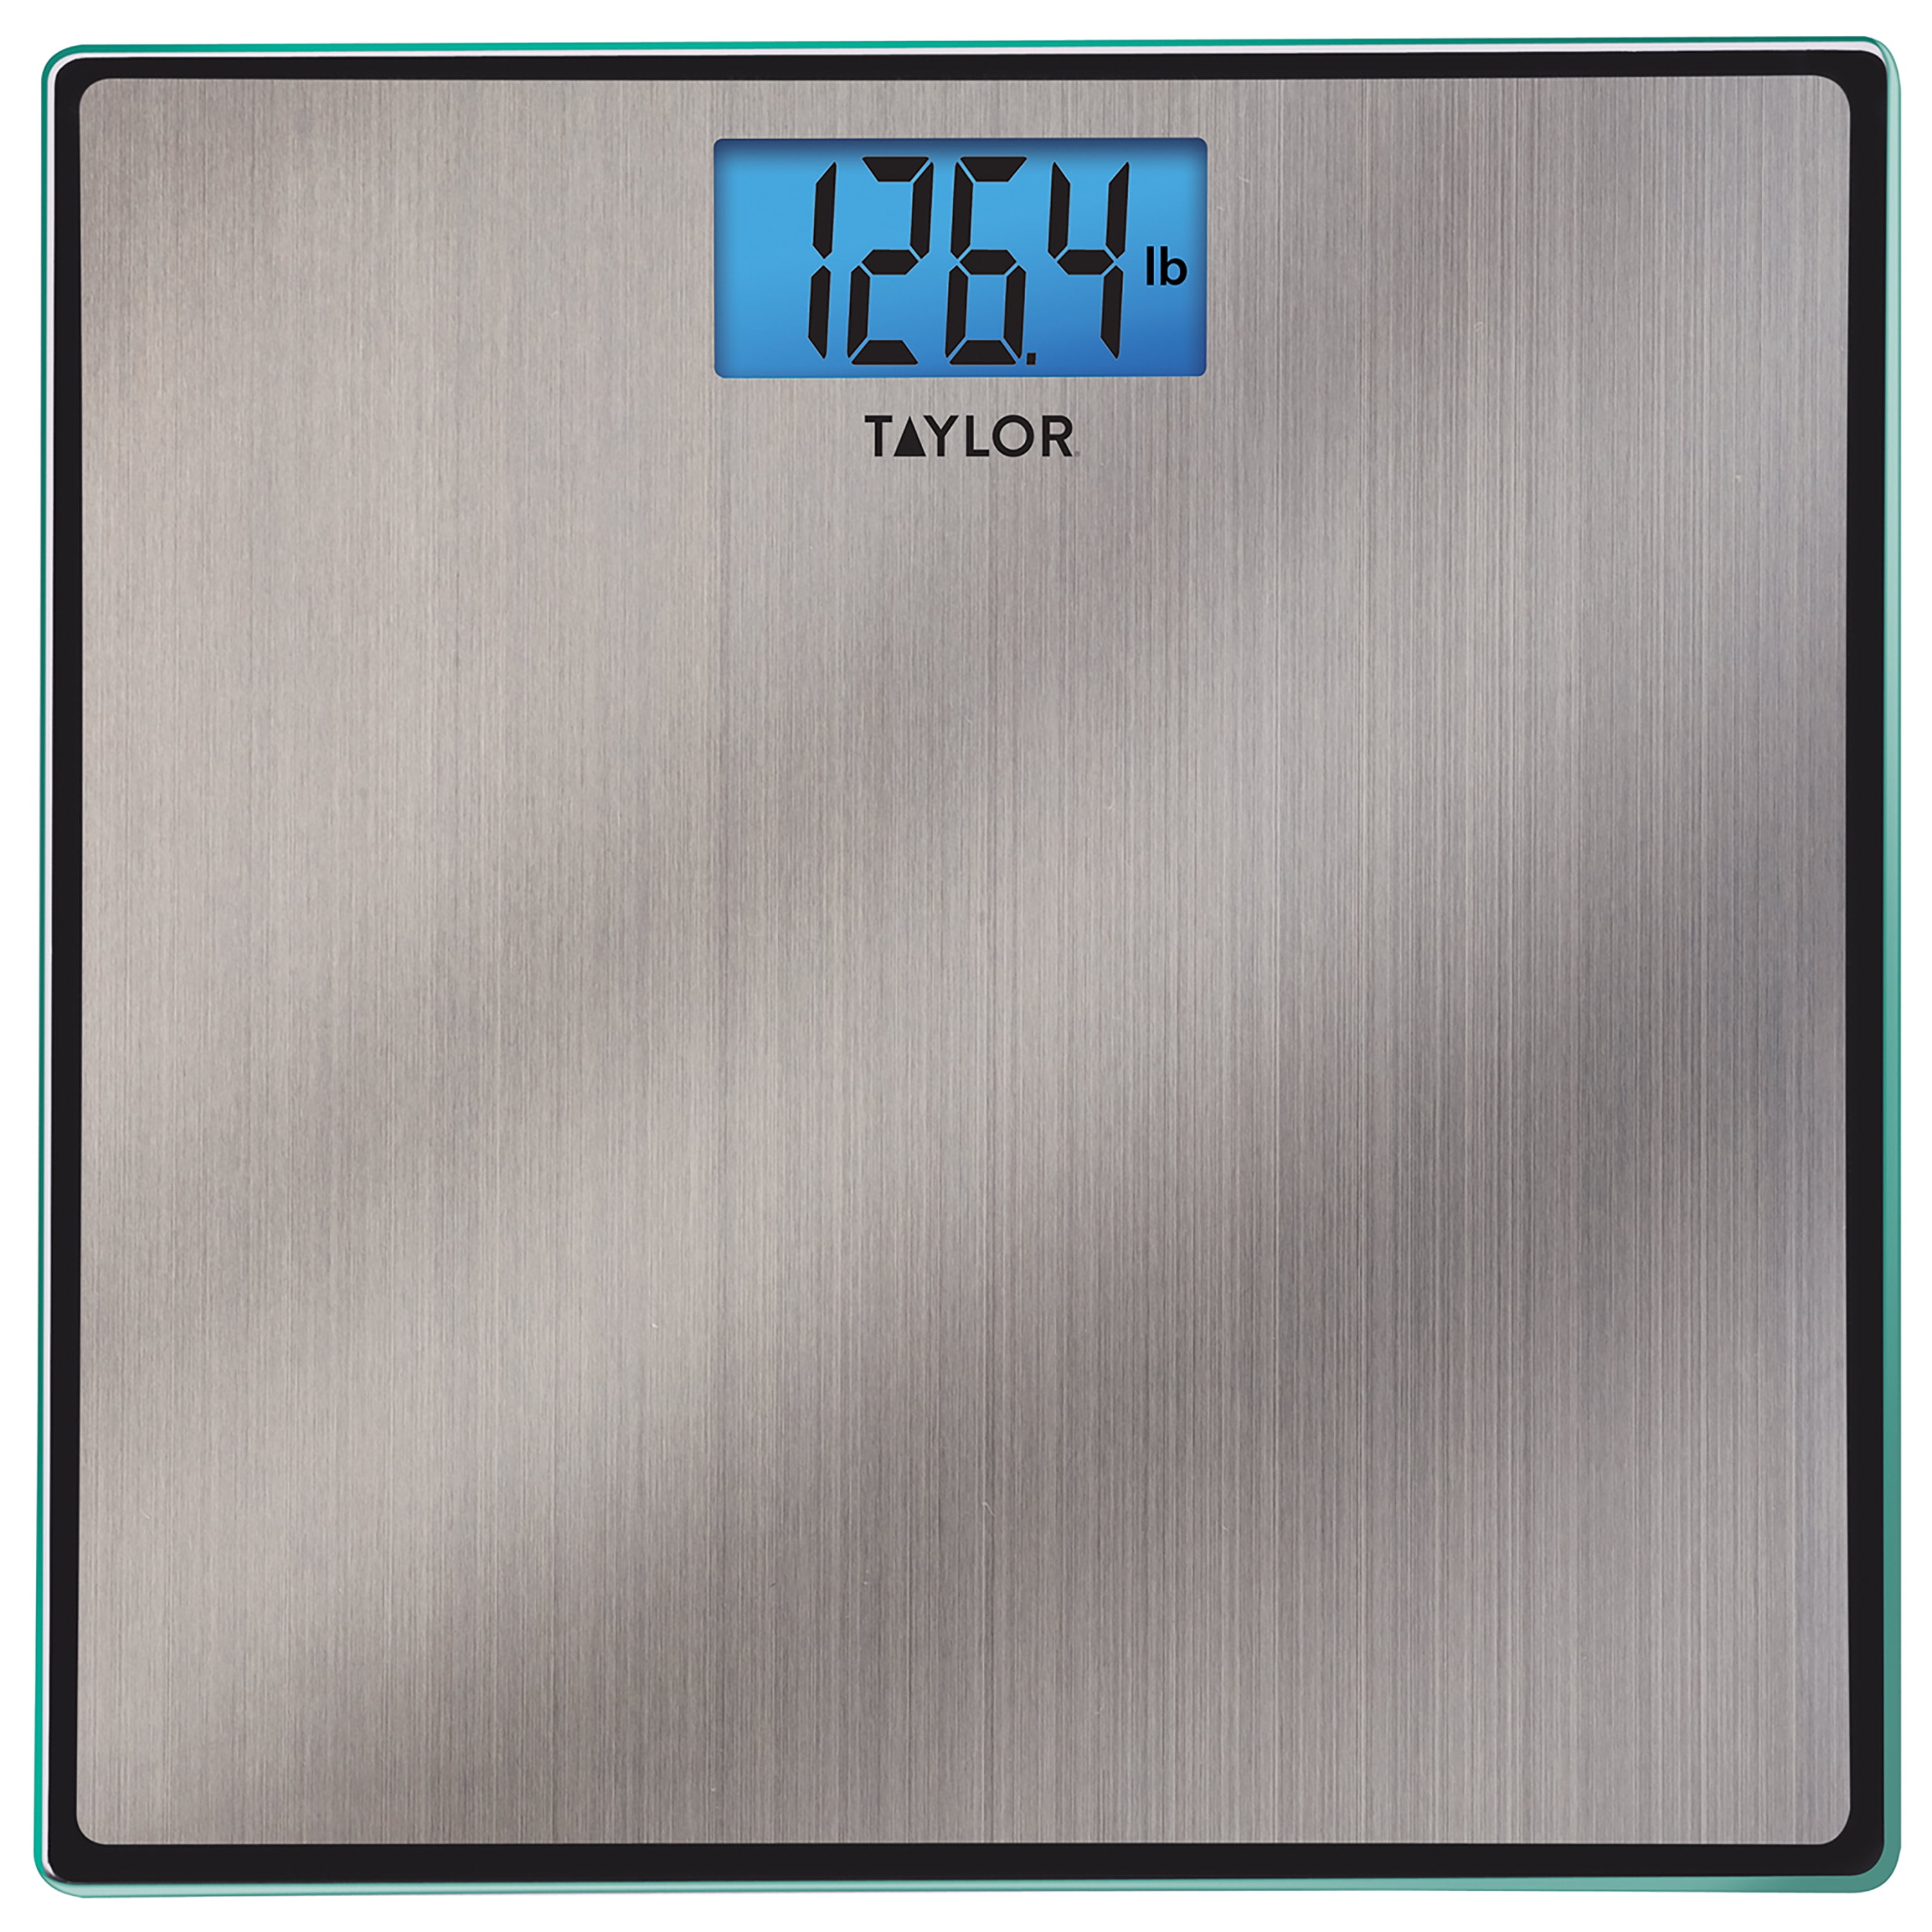 Taylor Model 7410 Digital Bathroom Scale- New In Box